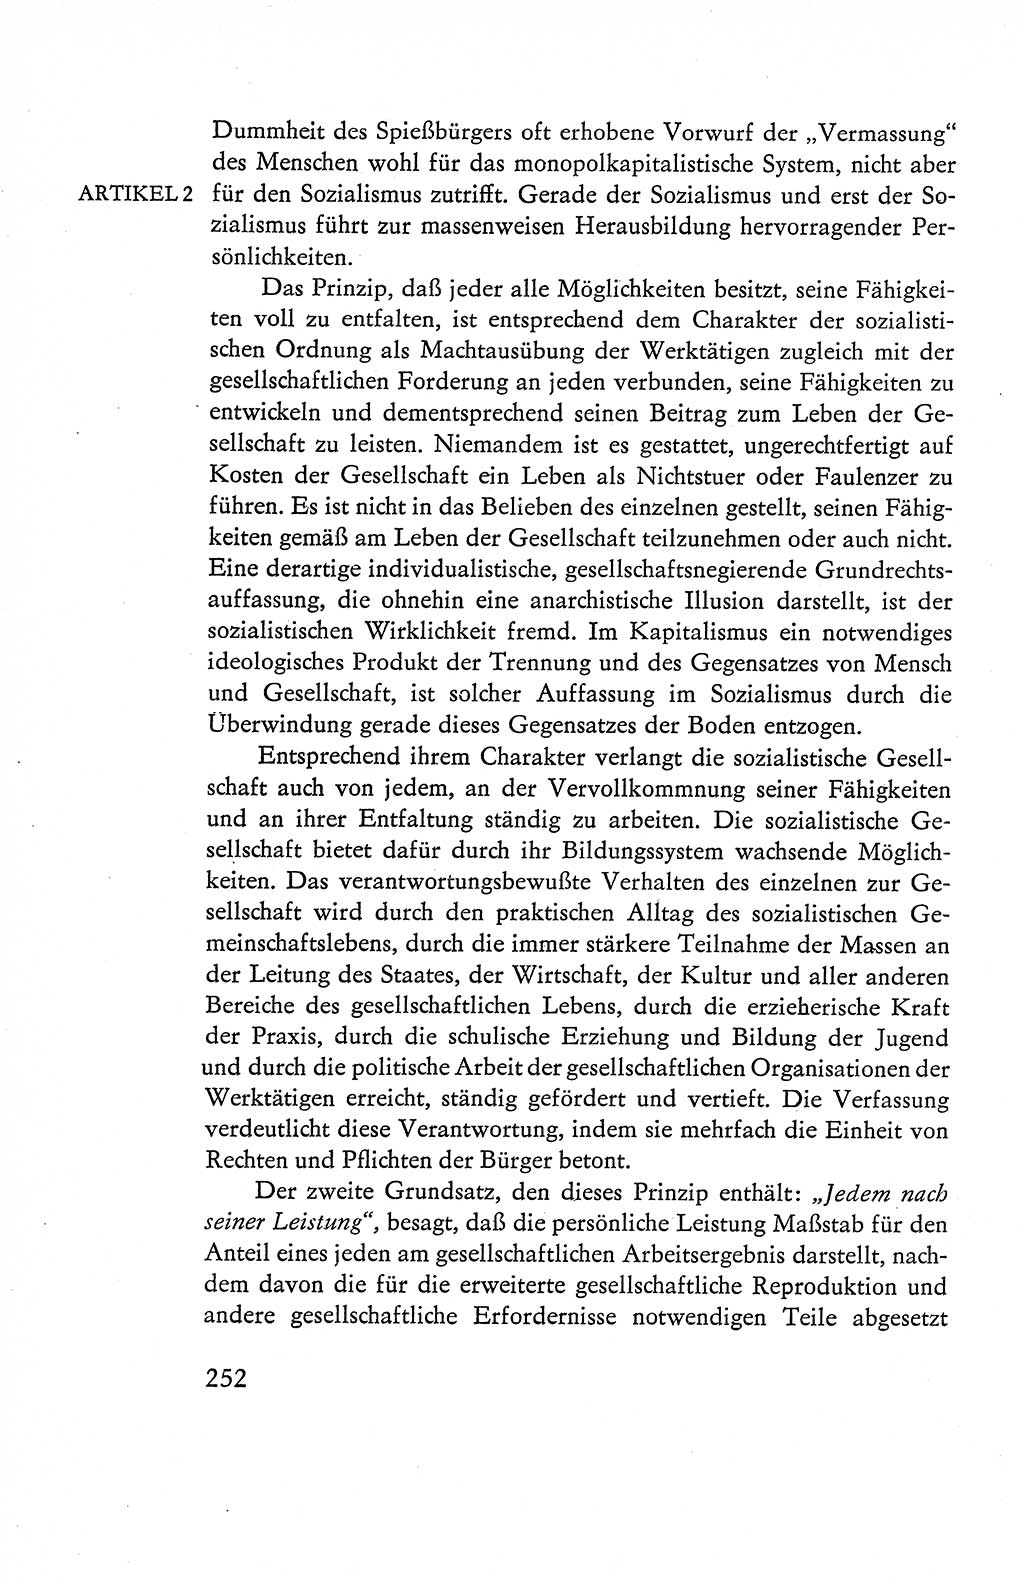 Verfassung der Deutschen Demokratischen Republik (DDR), Dokumente, Kommentar 1969, Band 1, Seite 252 (Verf. DDR Dok. Komm. 1969, Bd. 1, S. 252)